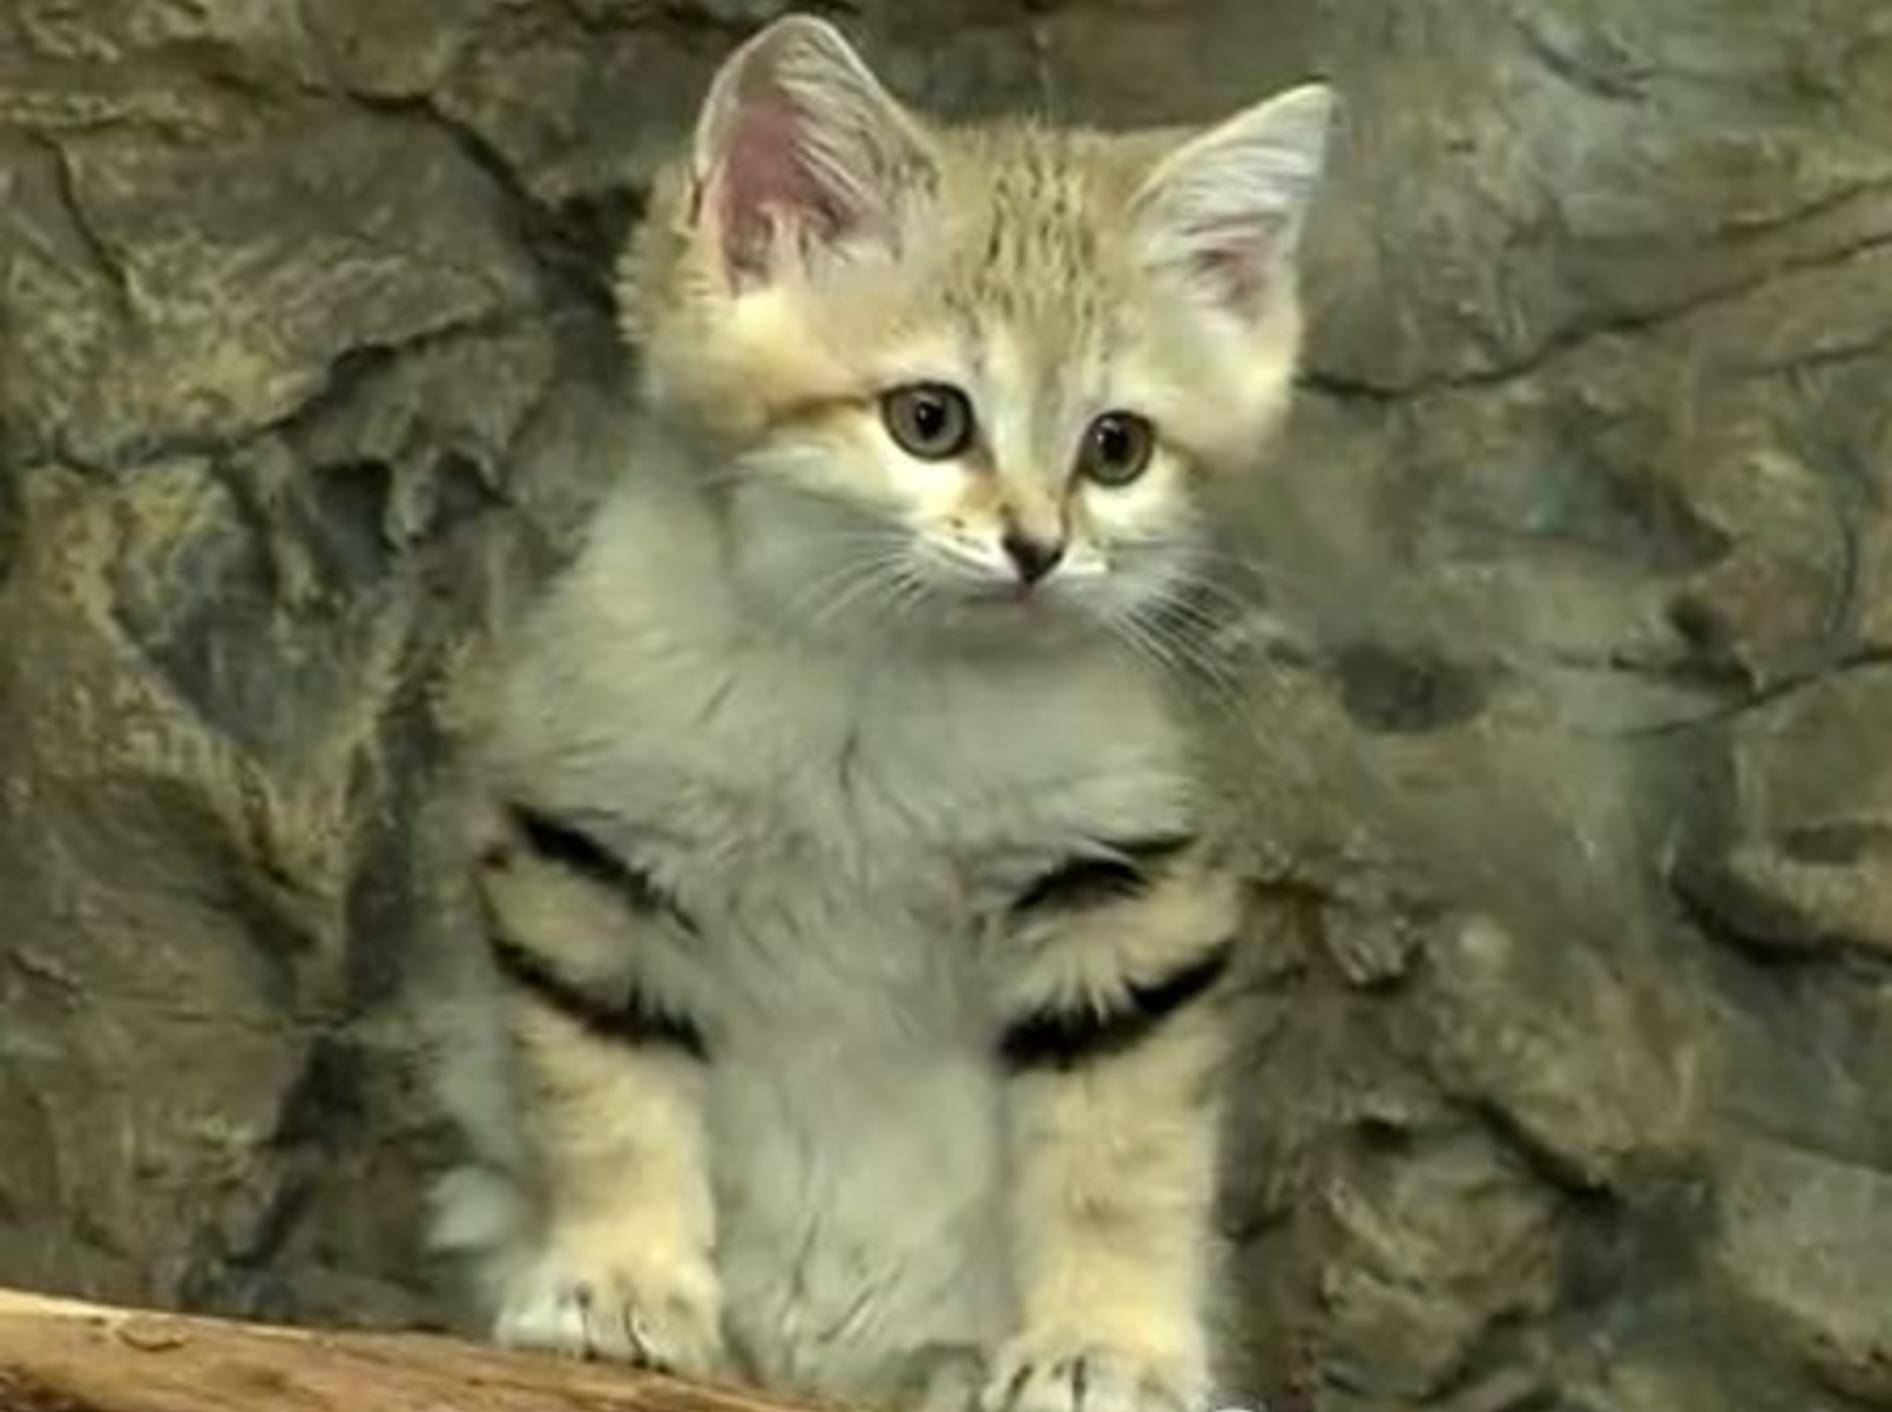 Sandkatze auf Tour: Wild- oder Hauskatze? – Bild: Youtube / The Cincinnati Zoo & Botanical Garden